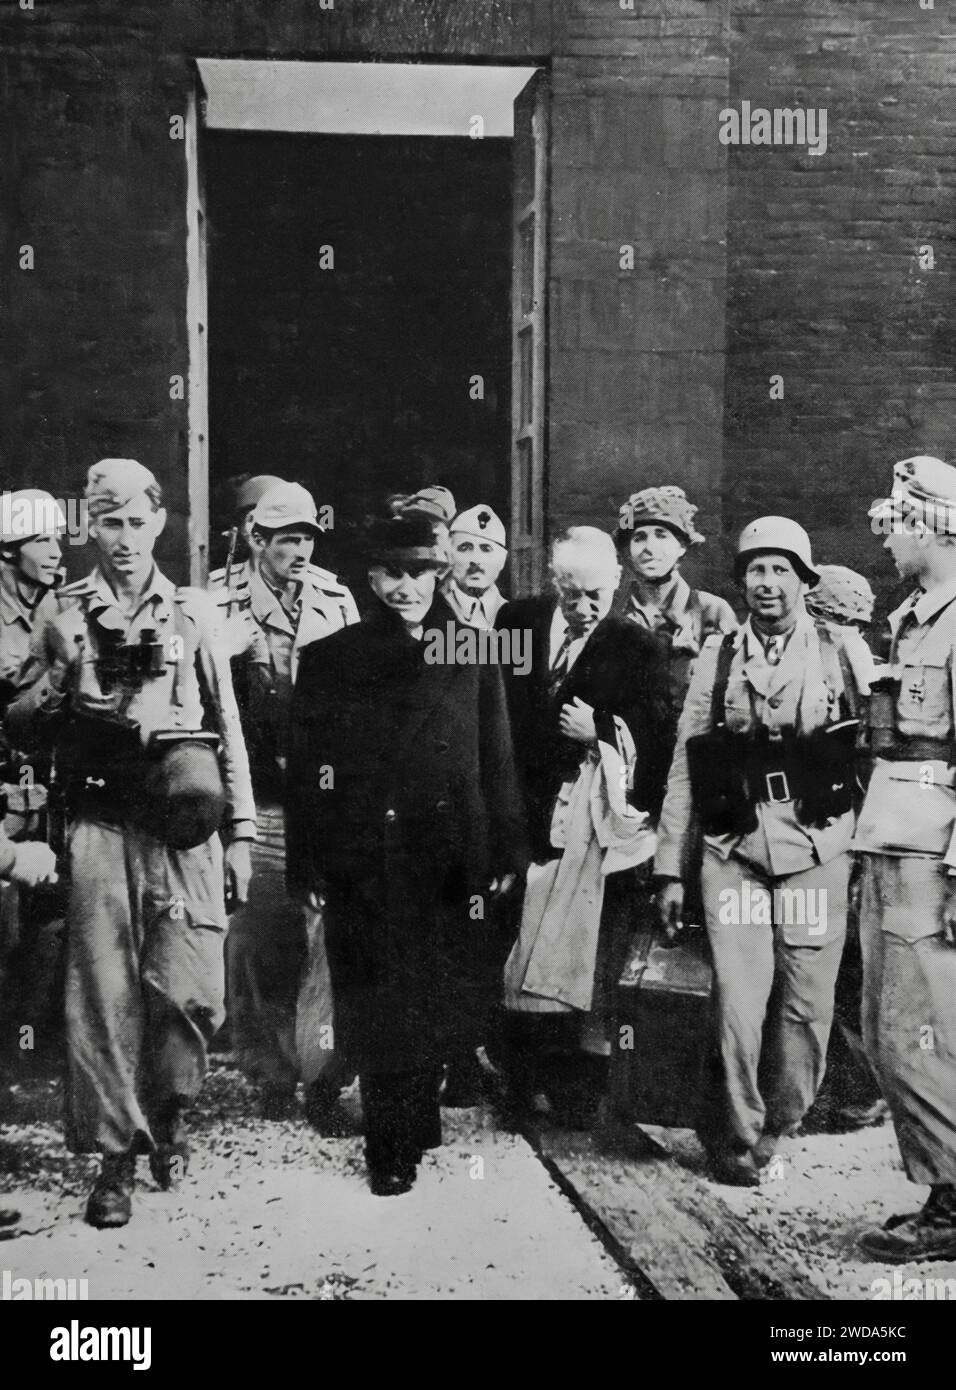 Renversé en juillet 1943, le dictateur italien Mussolini a été emprisonné à l'hôtel Gran Sassa dans les Abruzzes. On peut le voir sortir de captivité le 12 septembre, les troupes allemandes l'ont libéré pendant la Seconde Guerre mondiale. Banque D'Images